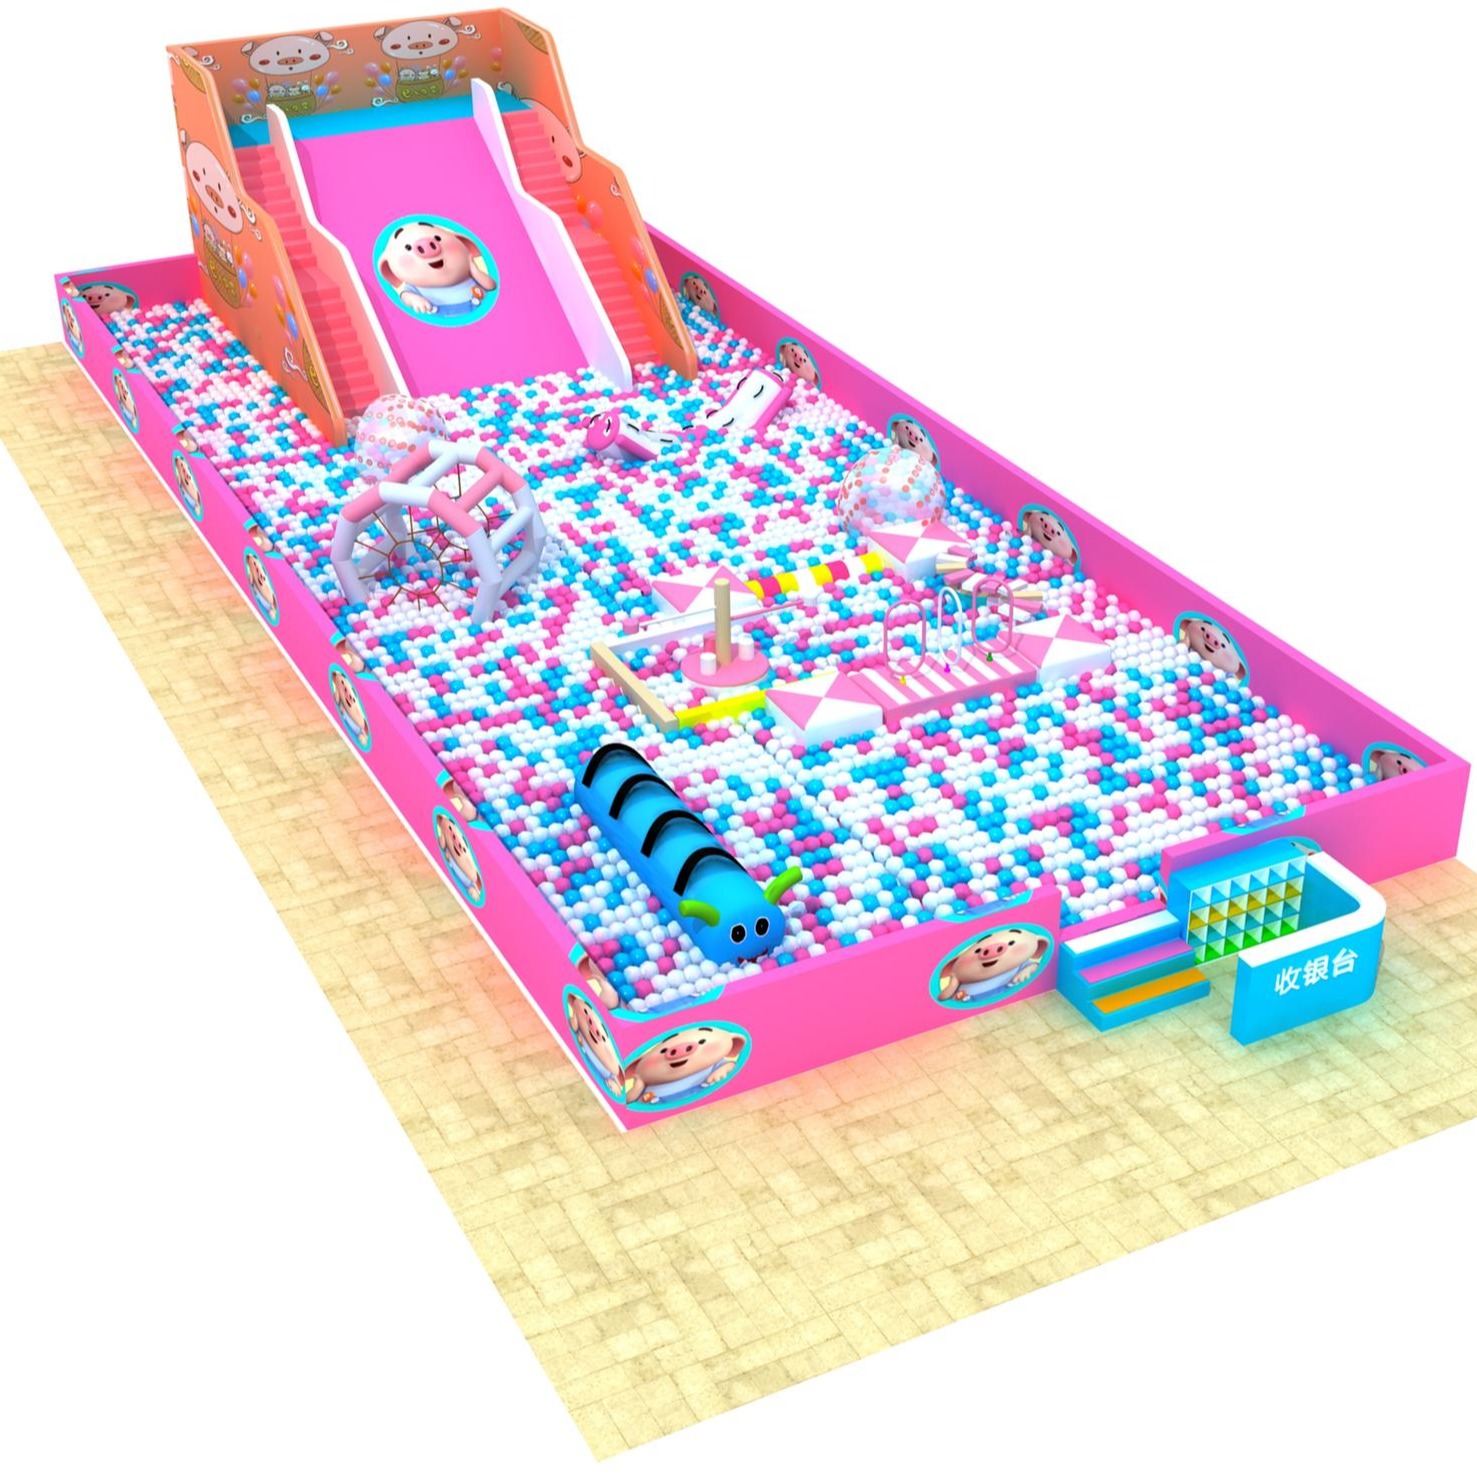 铭博  淘气堡  儿童乐园设备  滑梯组合  百万球池滑梯  益智类玩具  百万滑梯图片